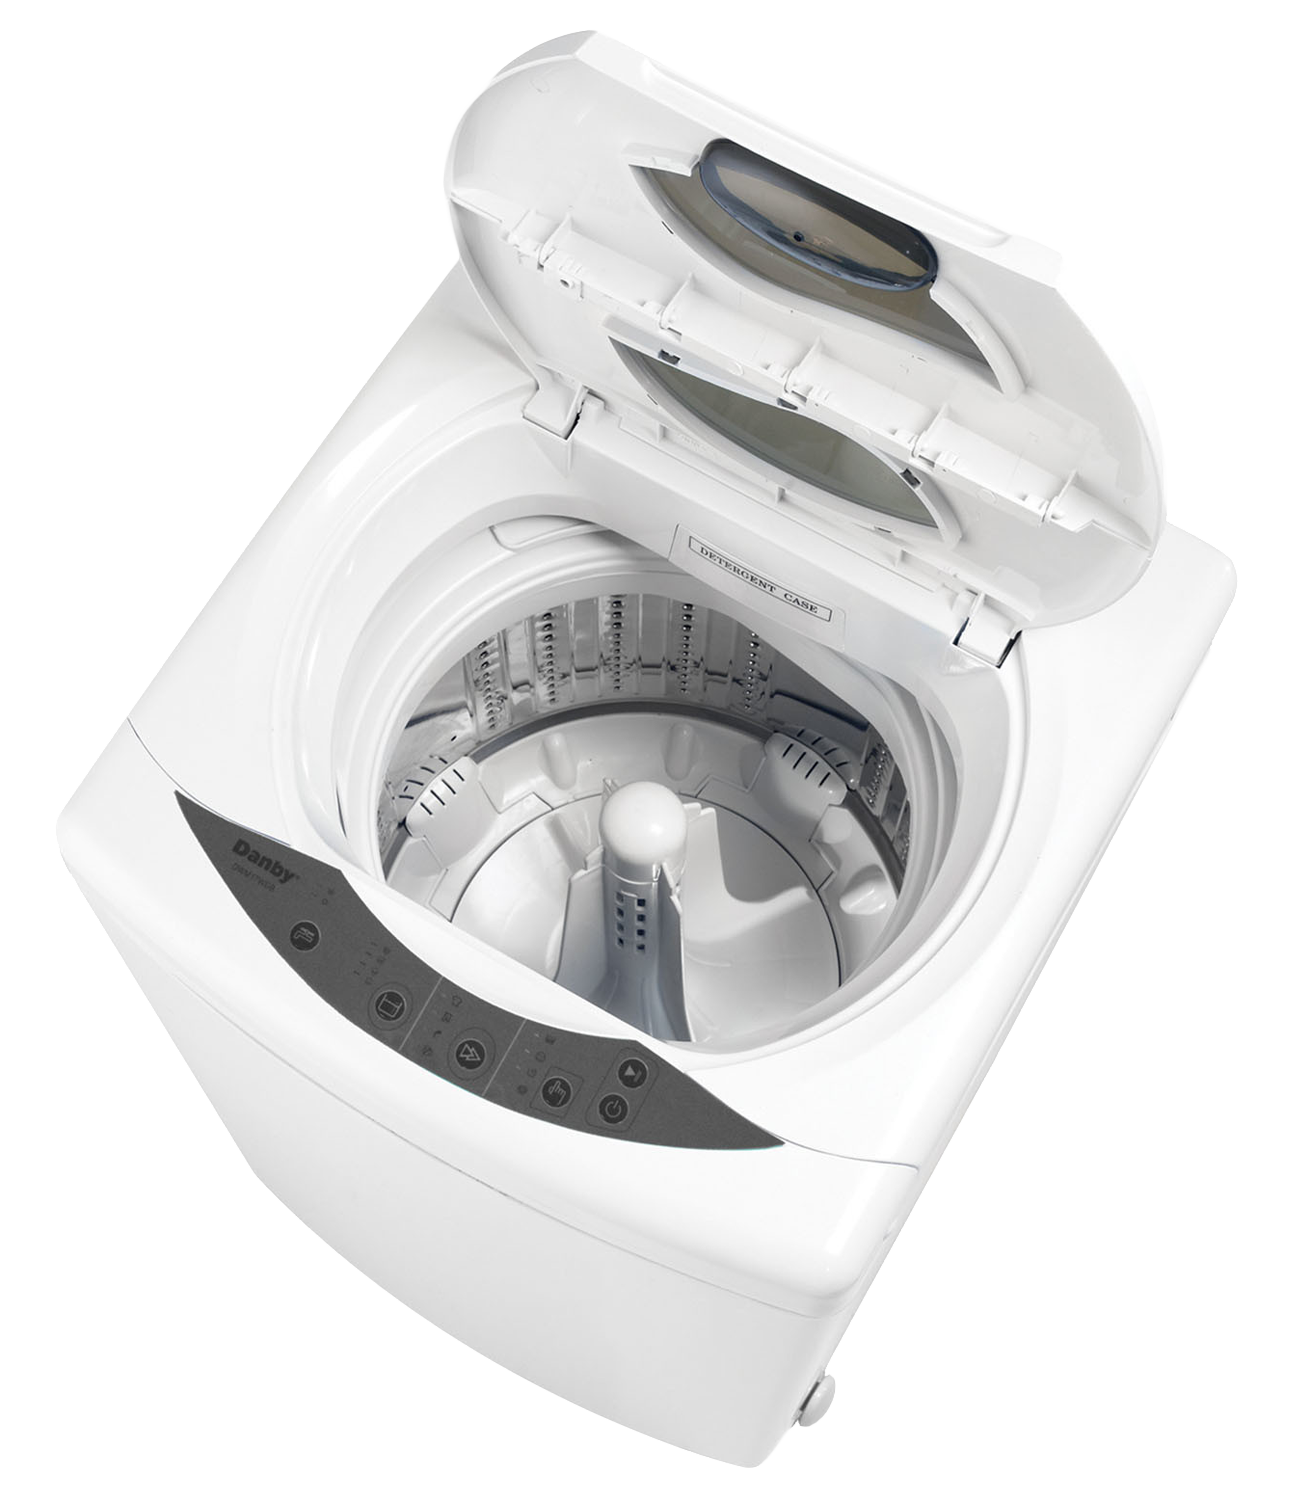 Automatic Washing Machine PNG Photo Image